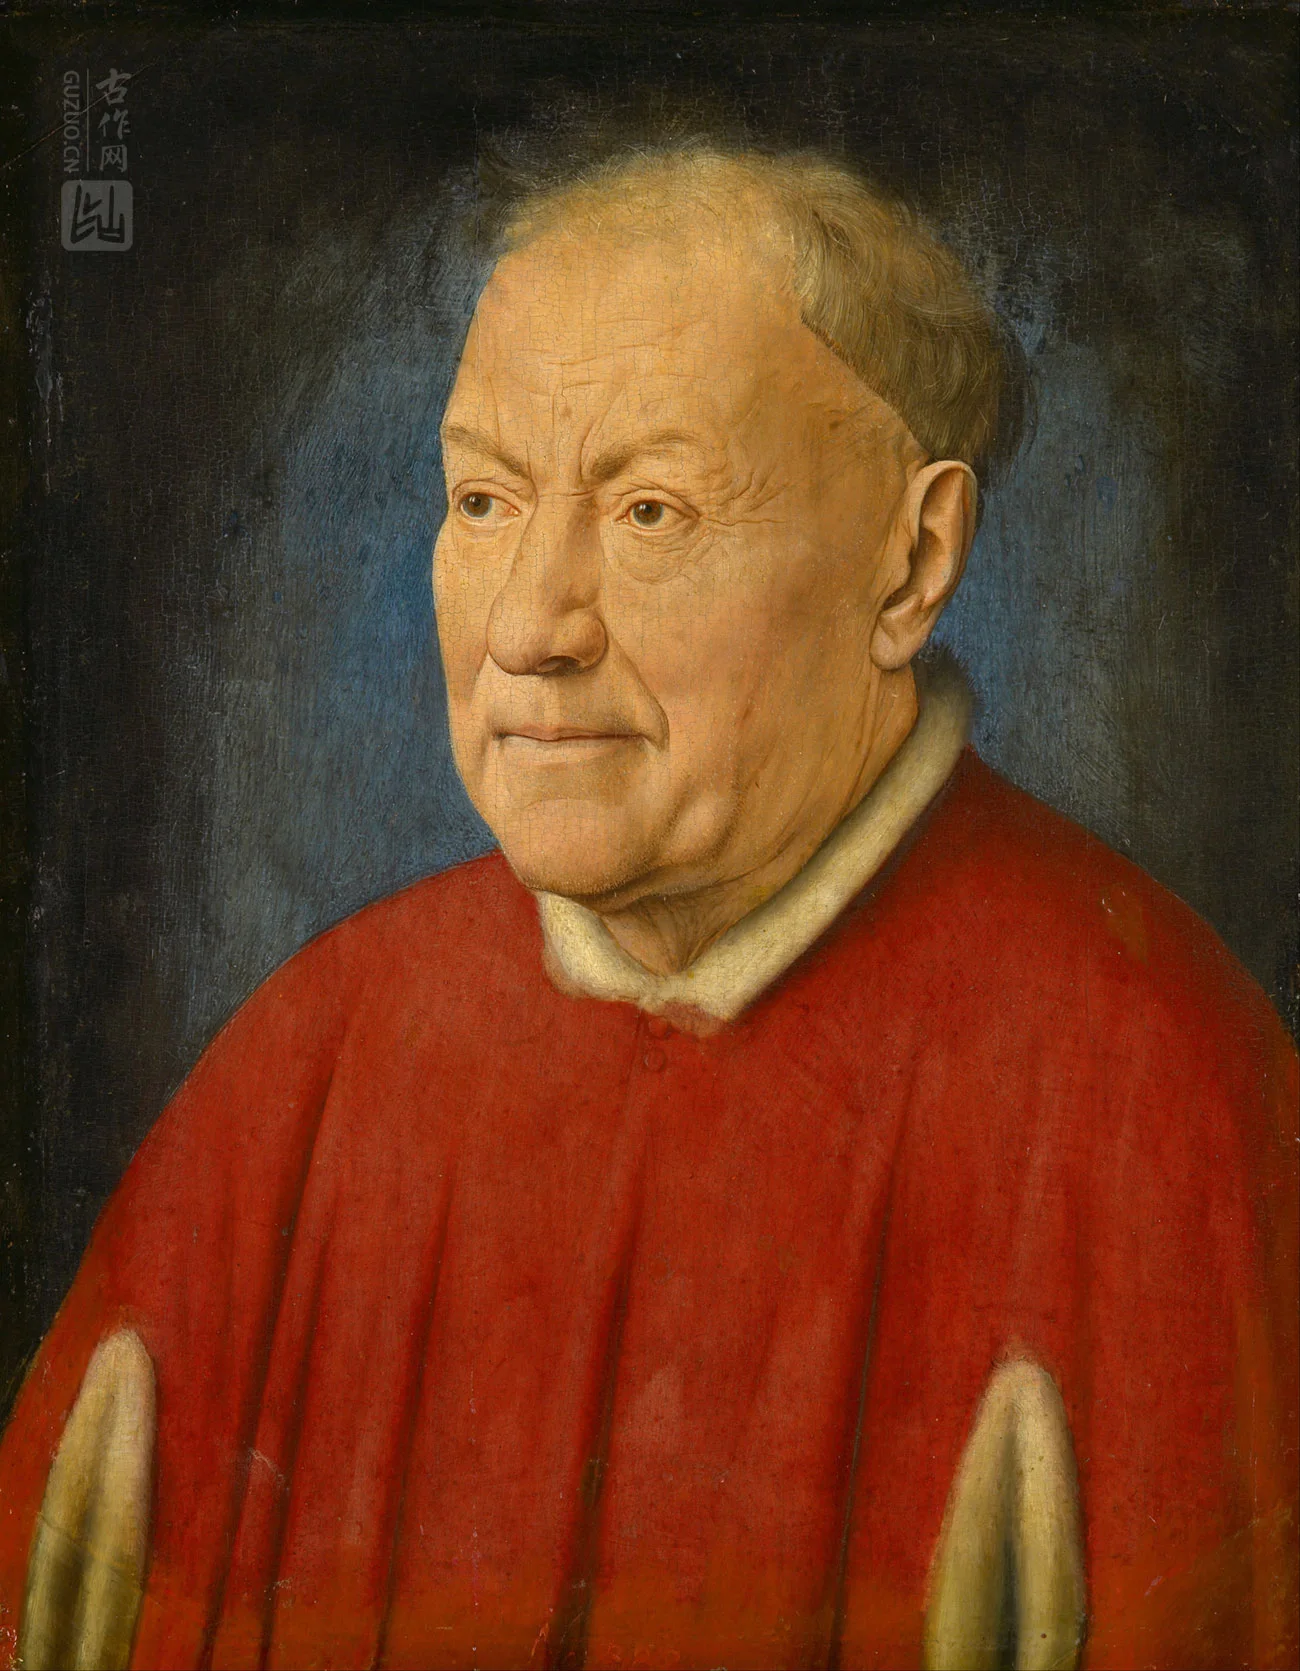 扬·凡·艾克肖像画作品《红衣主教尼科洛·阿尔贝加蒂》高清大图